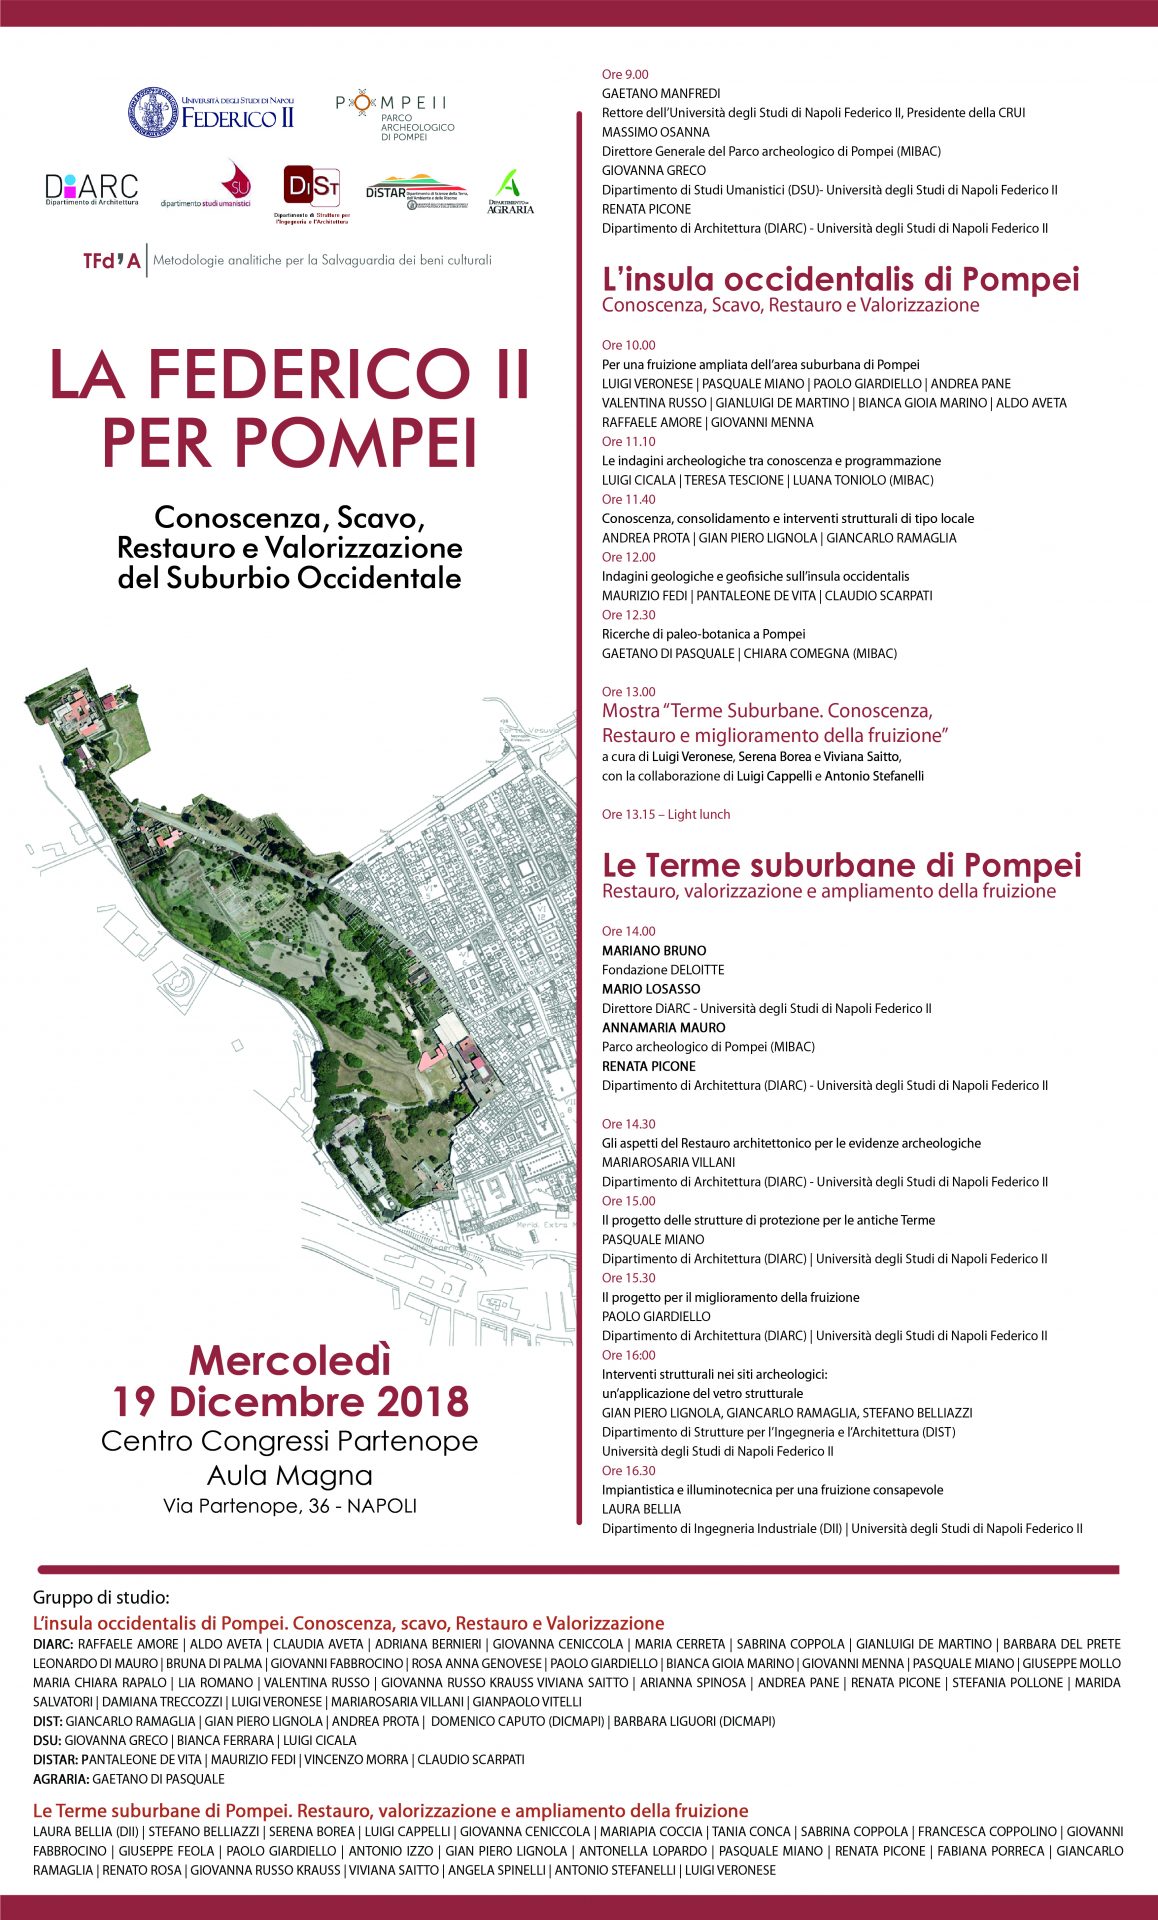 “La Federico II per Pompei. Conoscenza, scavo, restauro e valorizzazione del Suburbio Occidentale”